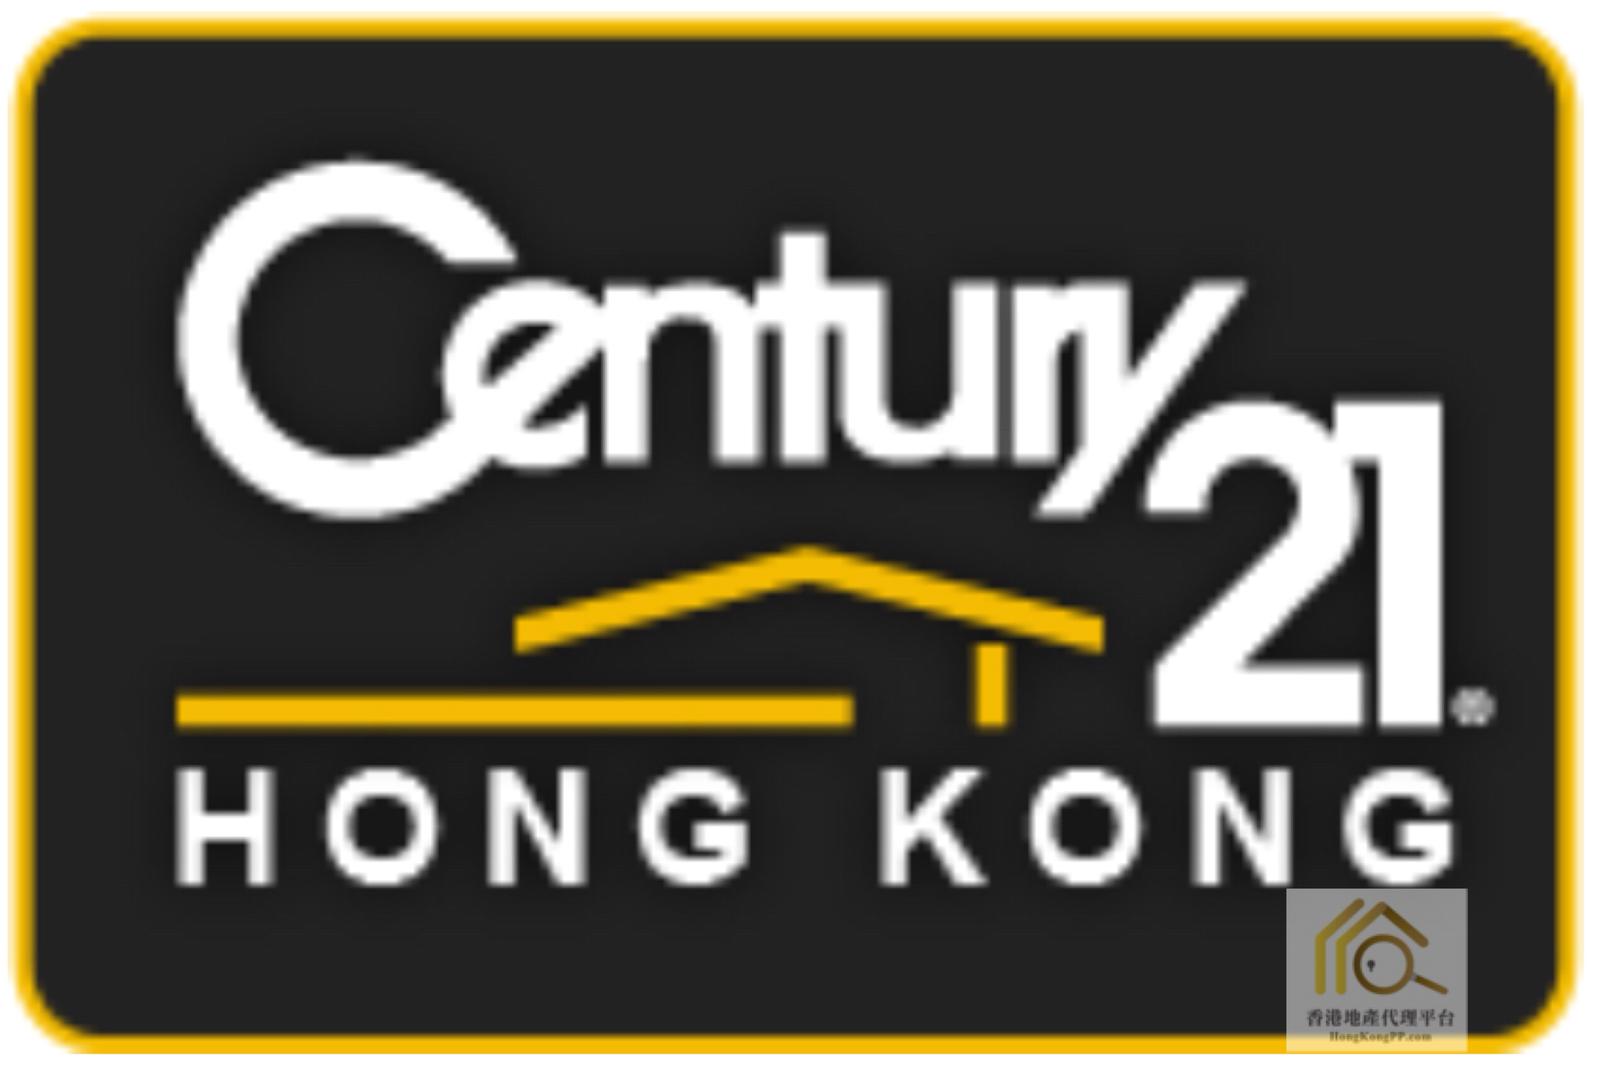 地產代理公司: 世紀21世紀21搜房地產